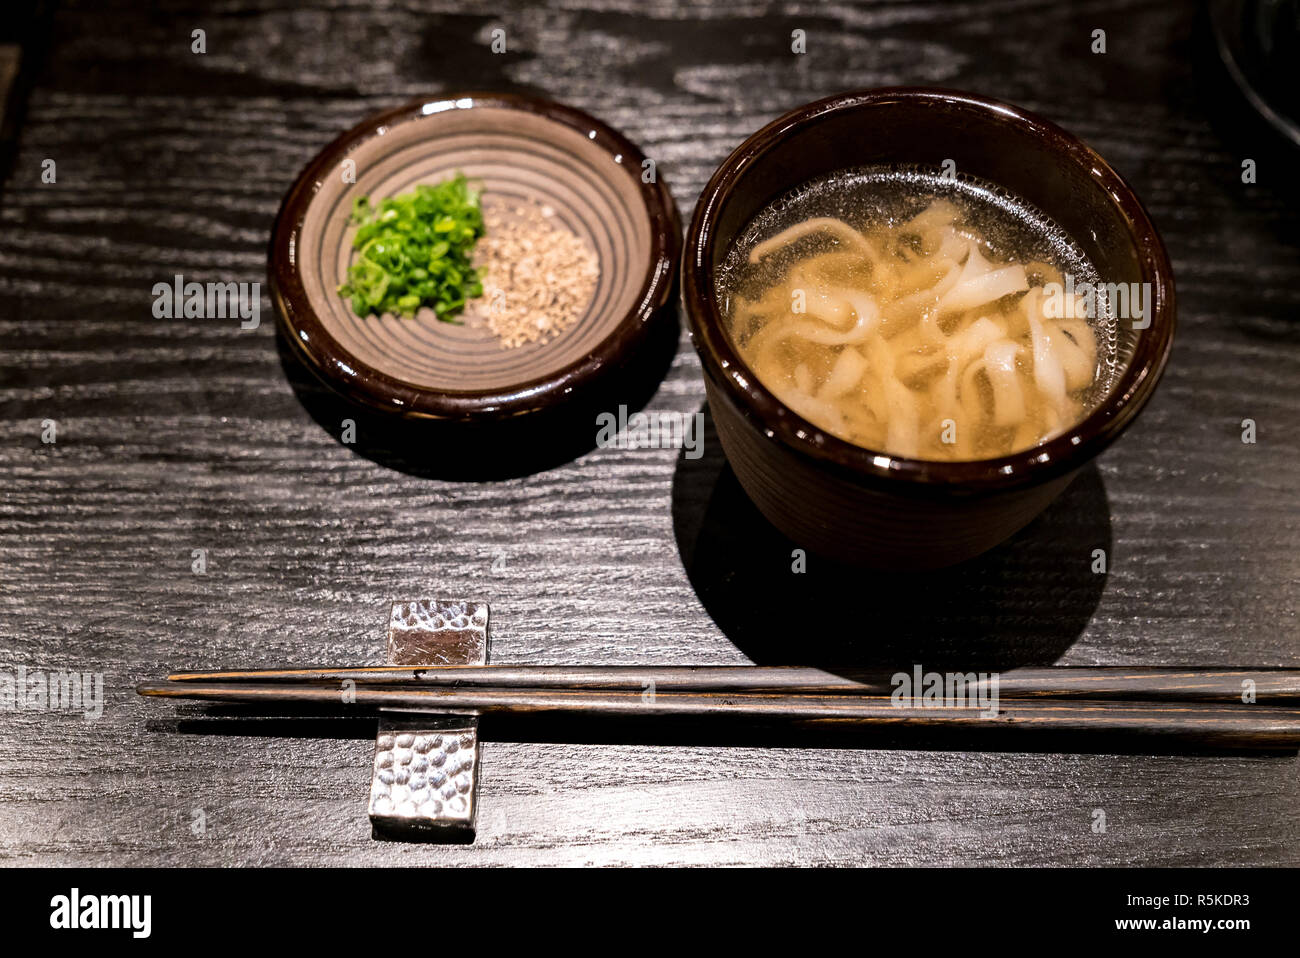 Kishimen udon noodles Stock Photo